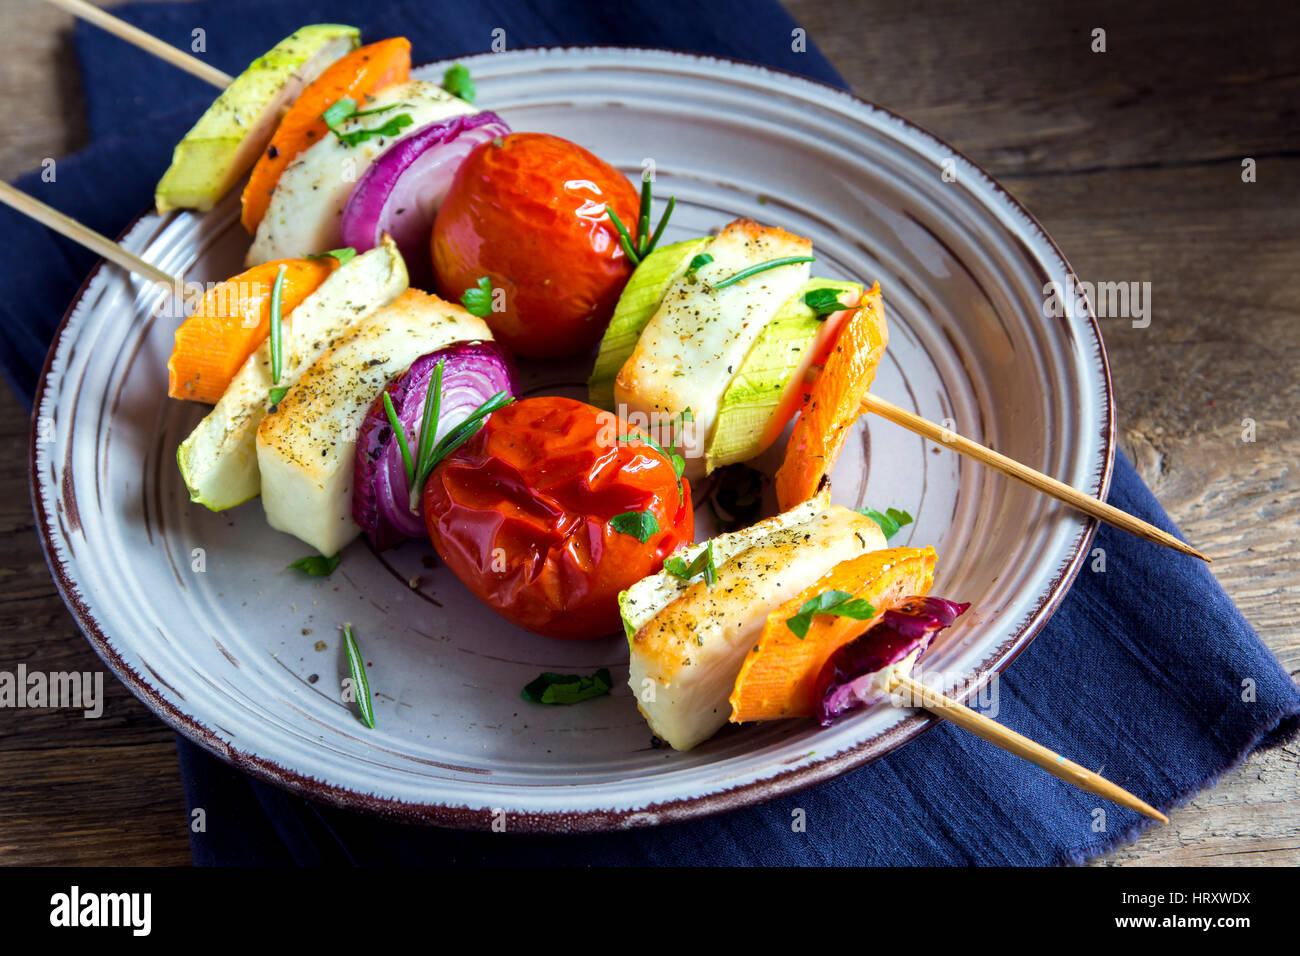 Halloumi-Käse und Gemüse gegrillte Spieße auf Platte mit Gewürzen und  Kräutern hautnah - gesunde vegetarische vegane Diät Grill gegrillte Gemüse  Zuhause Stockfotografie - Alamy